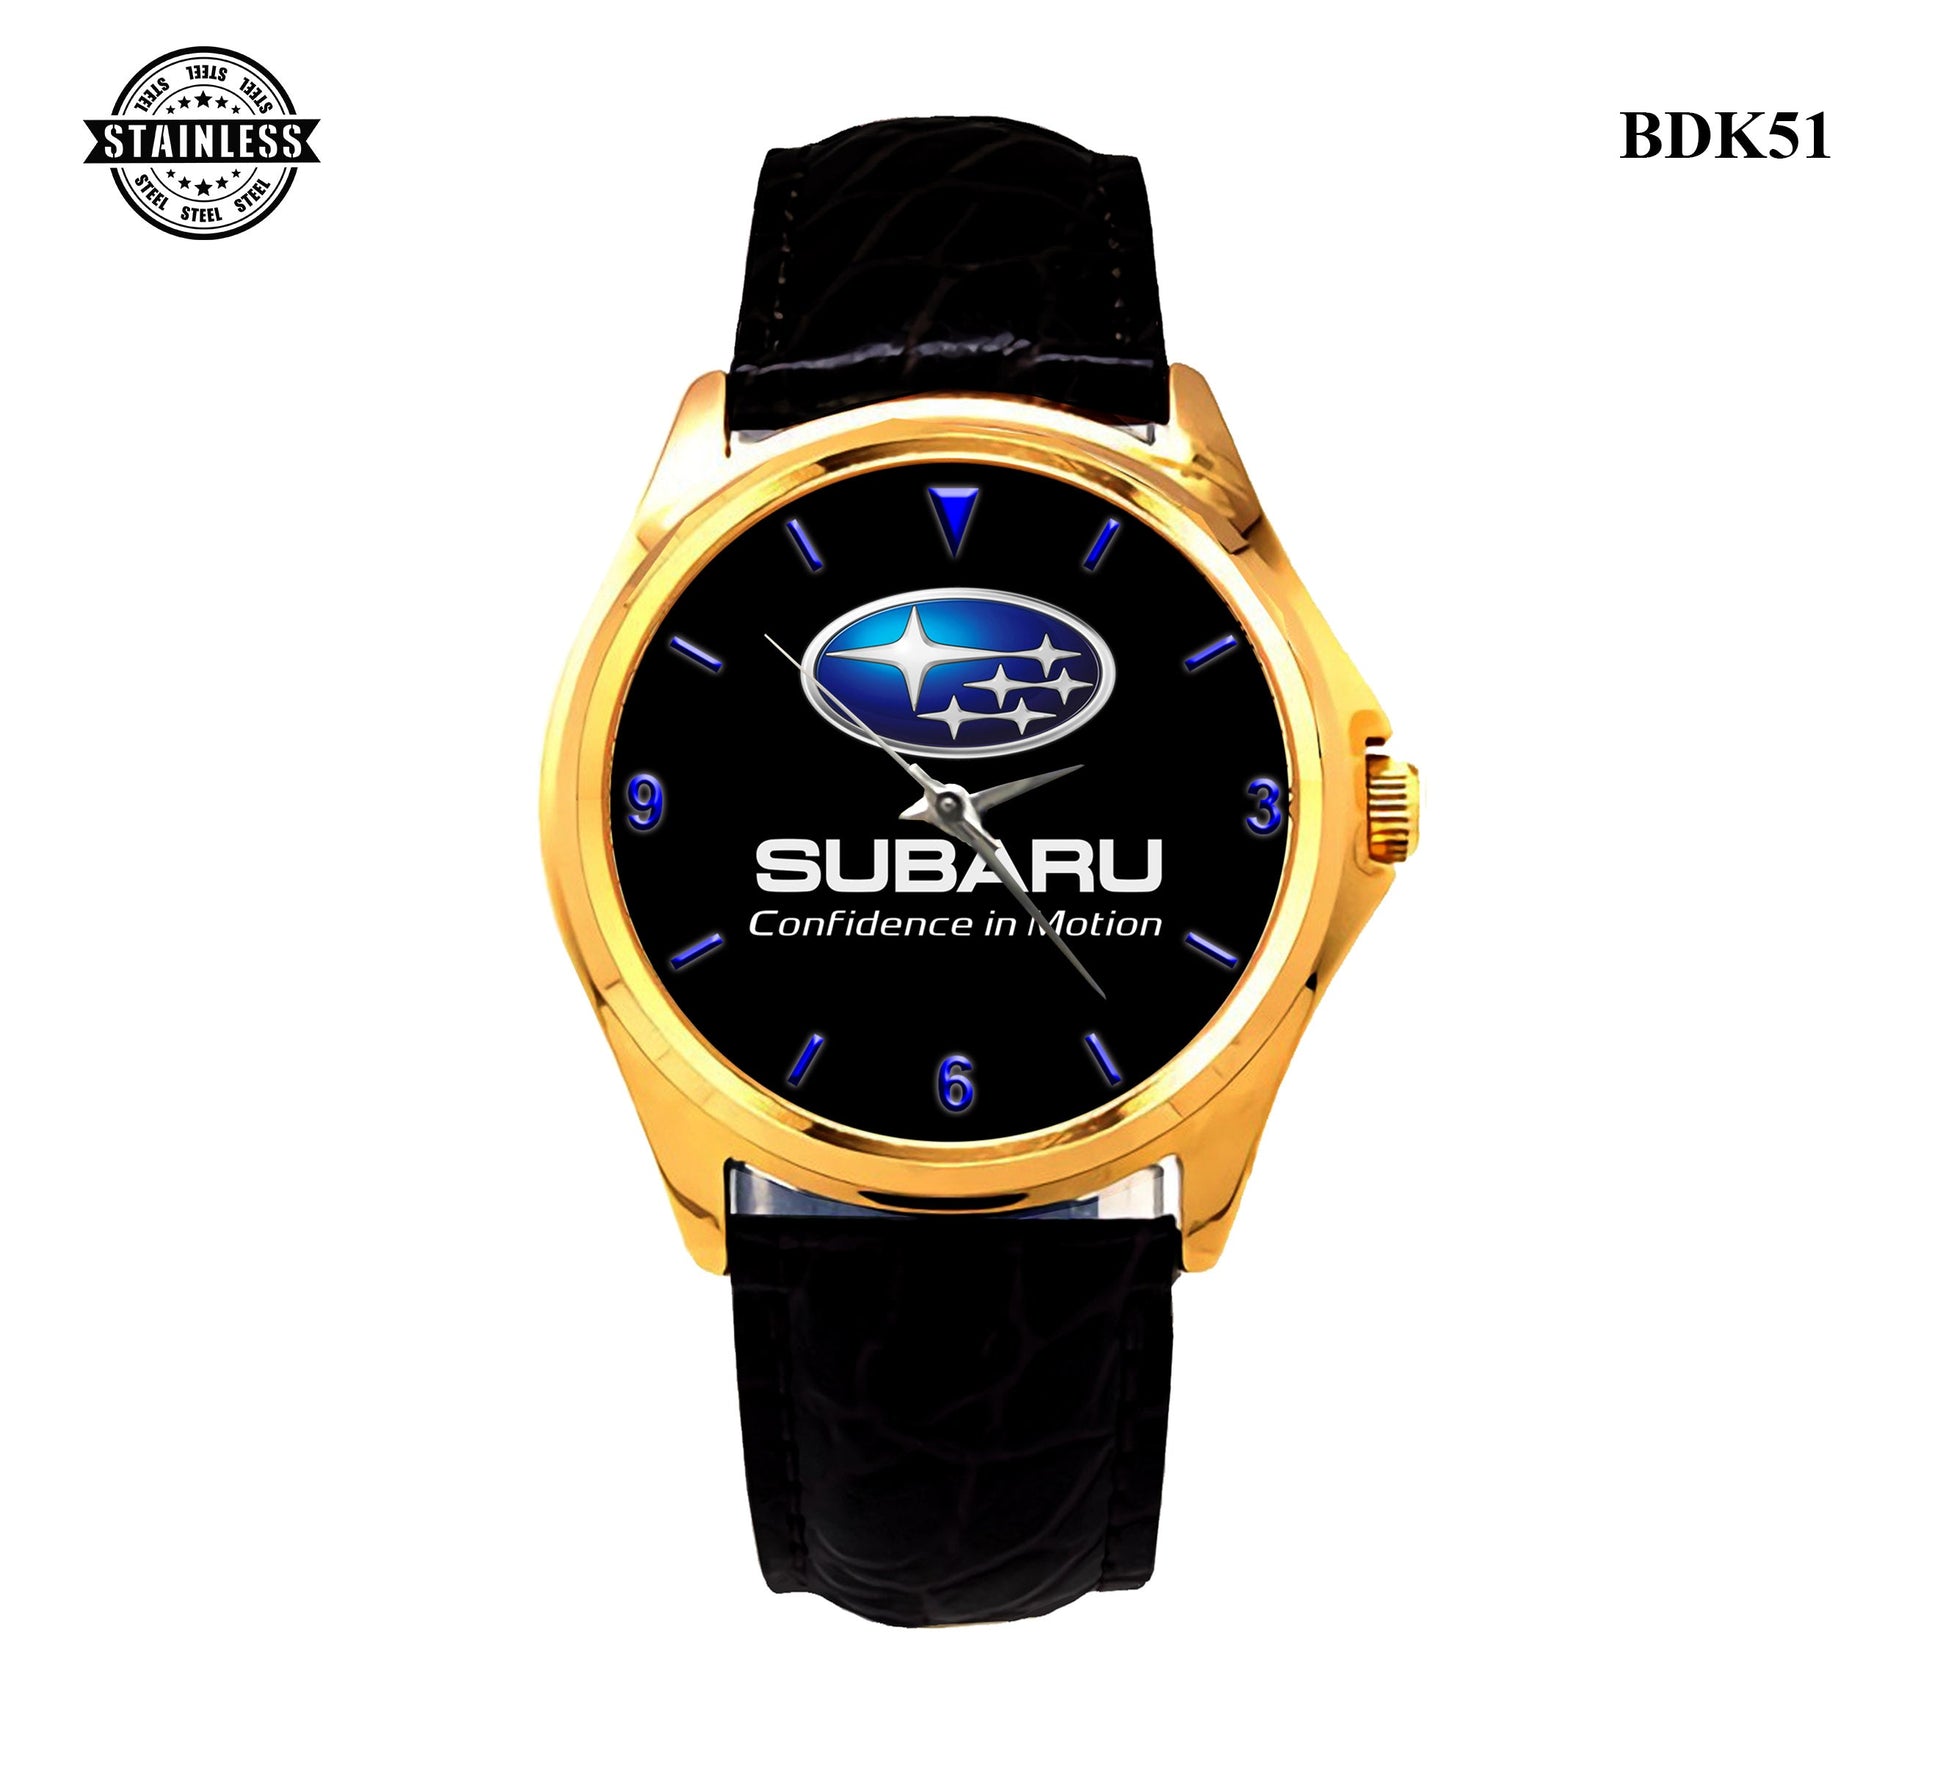 Subaru covidence in motion Sport Metal Watch Bdk55